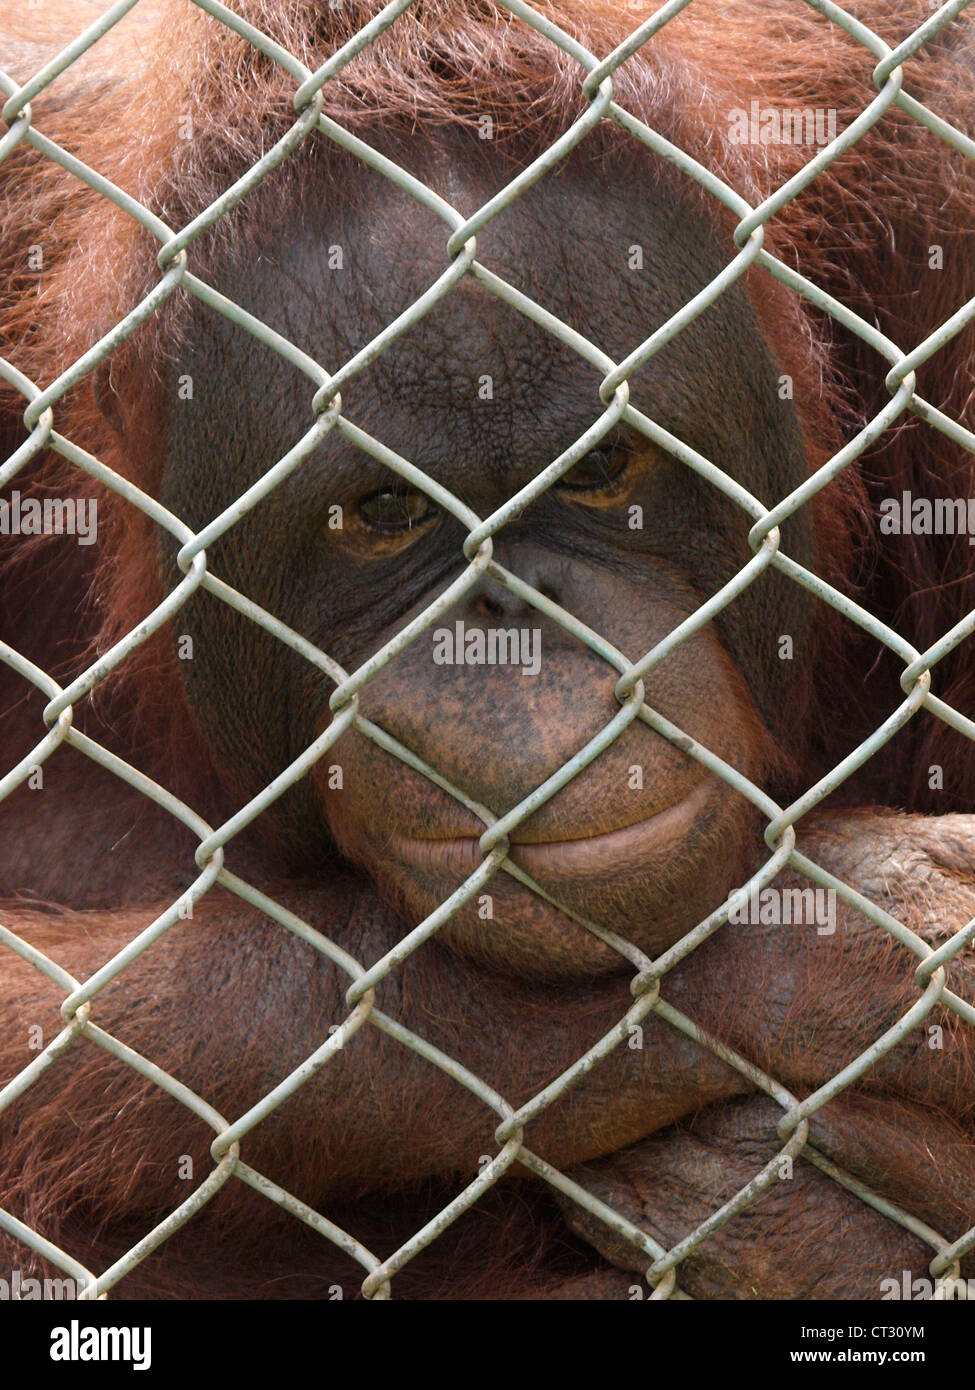 Triste à la recherche de l'orang-outan à travers un grillage, UK Banque D'Images